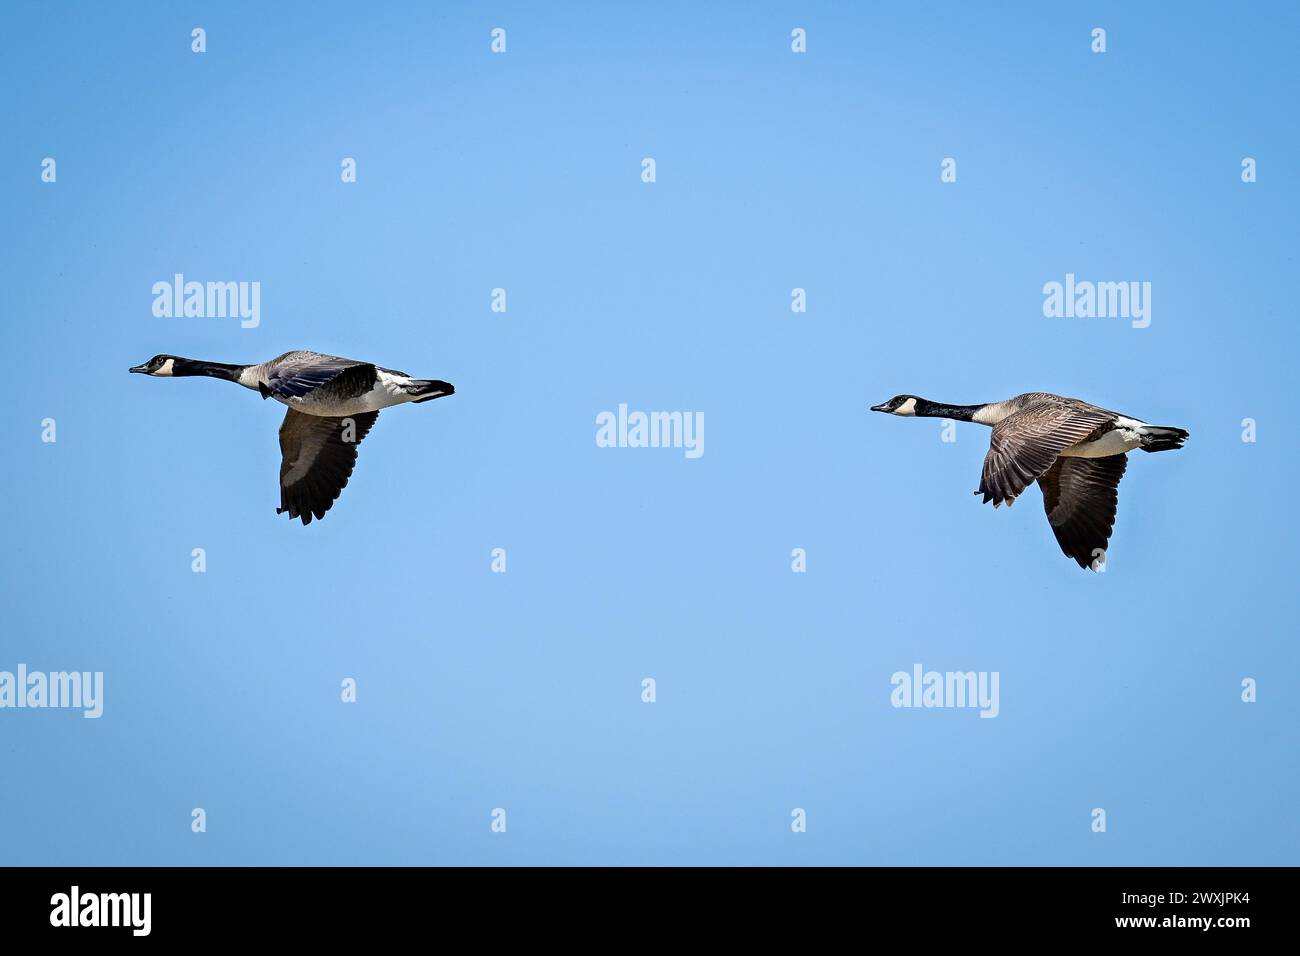 Eine Herde fliegende kanadische Gänse in Bewegung Stockfoto